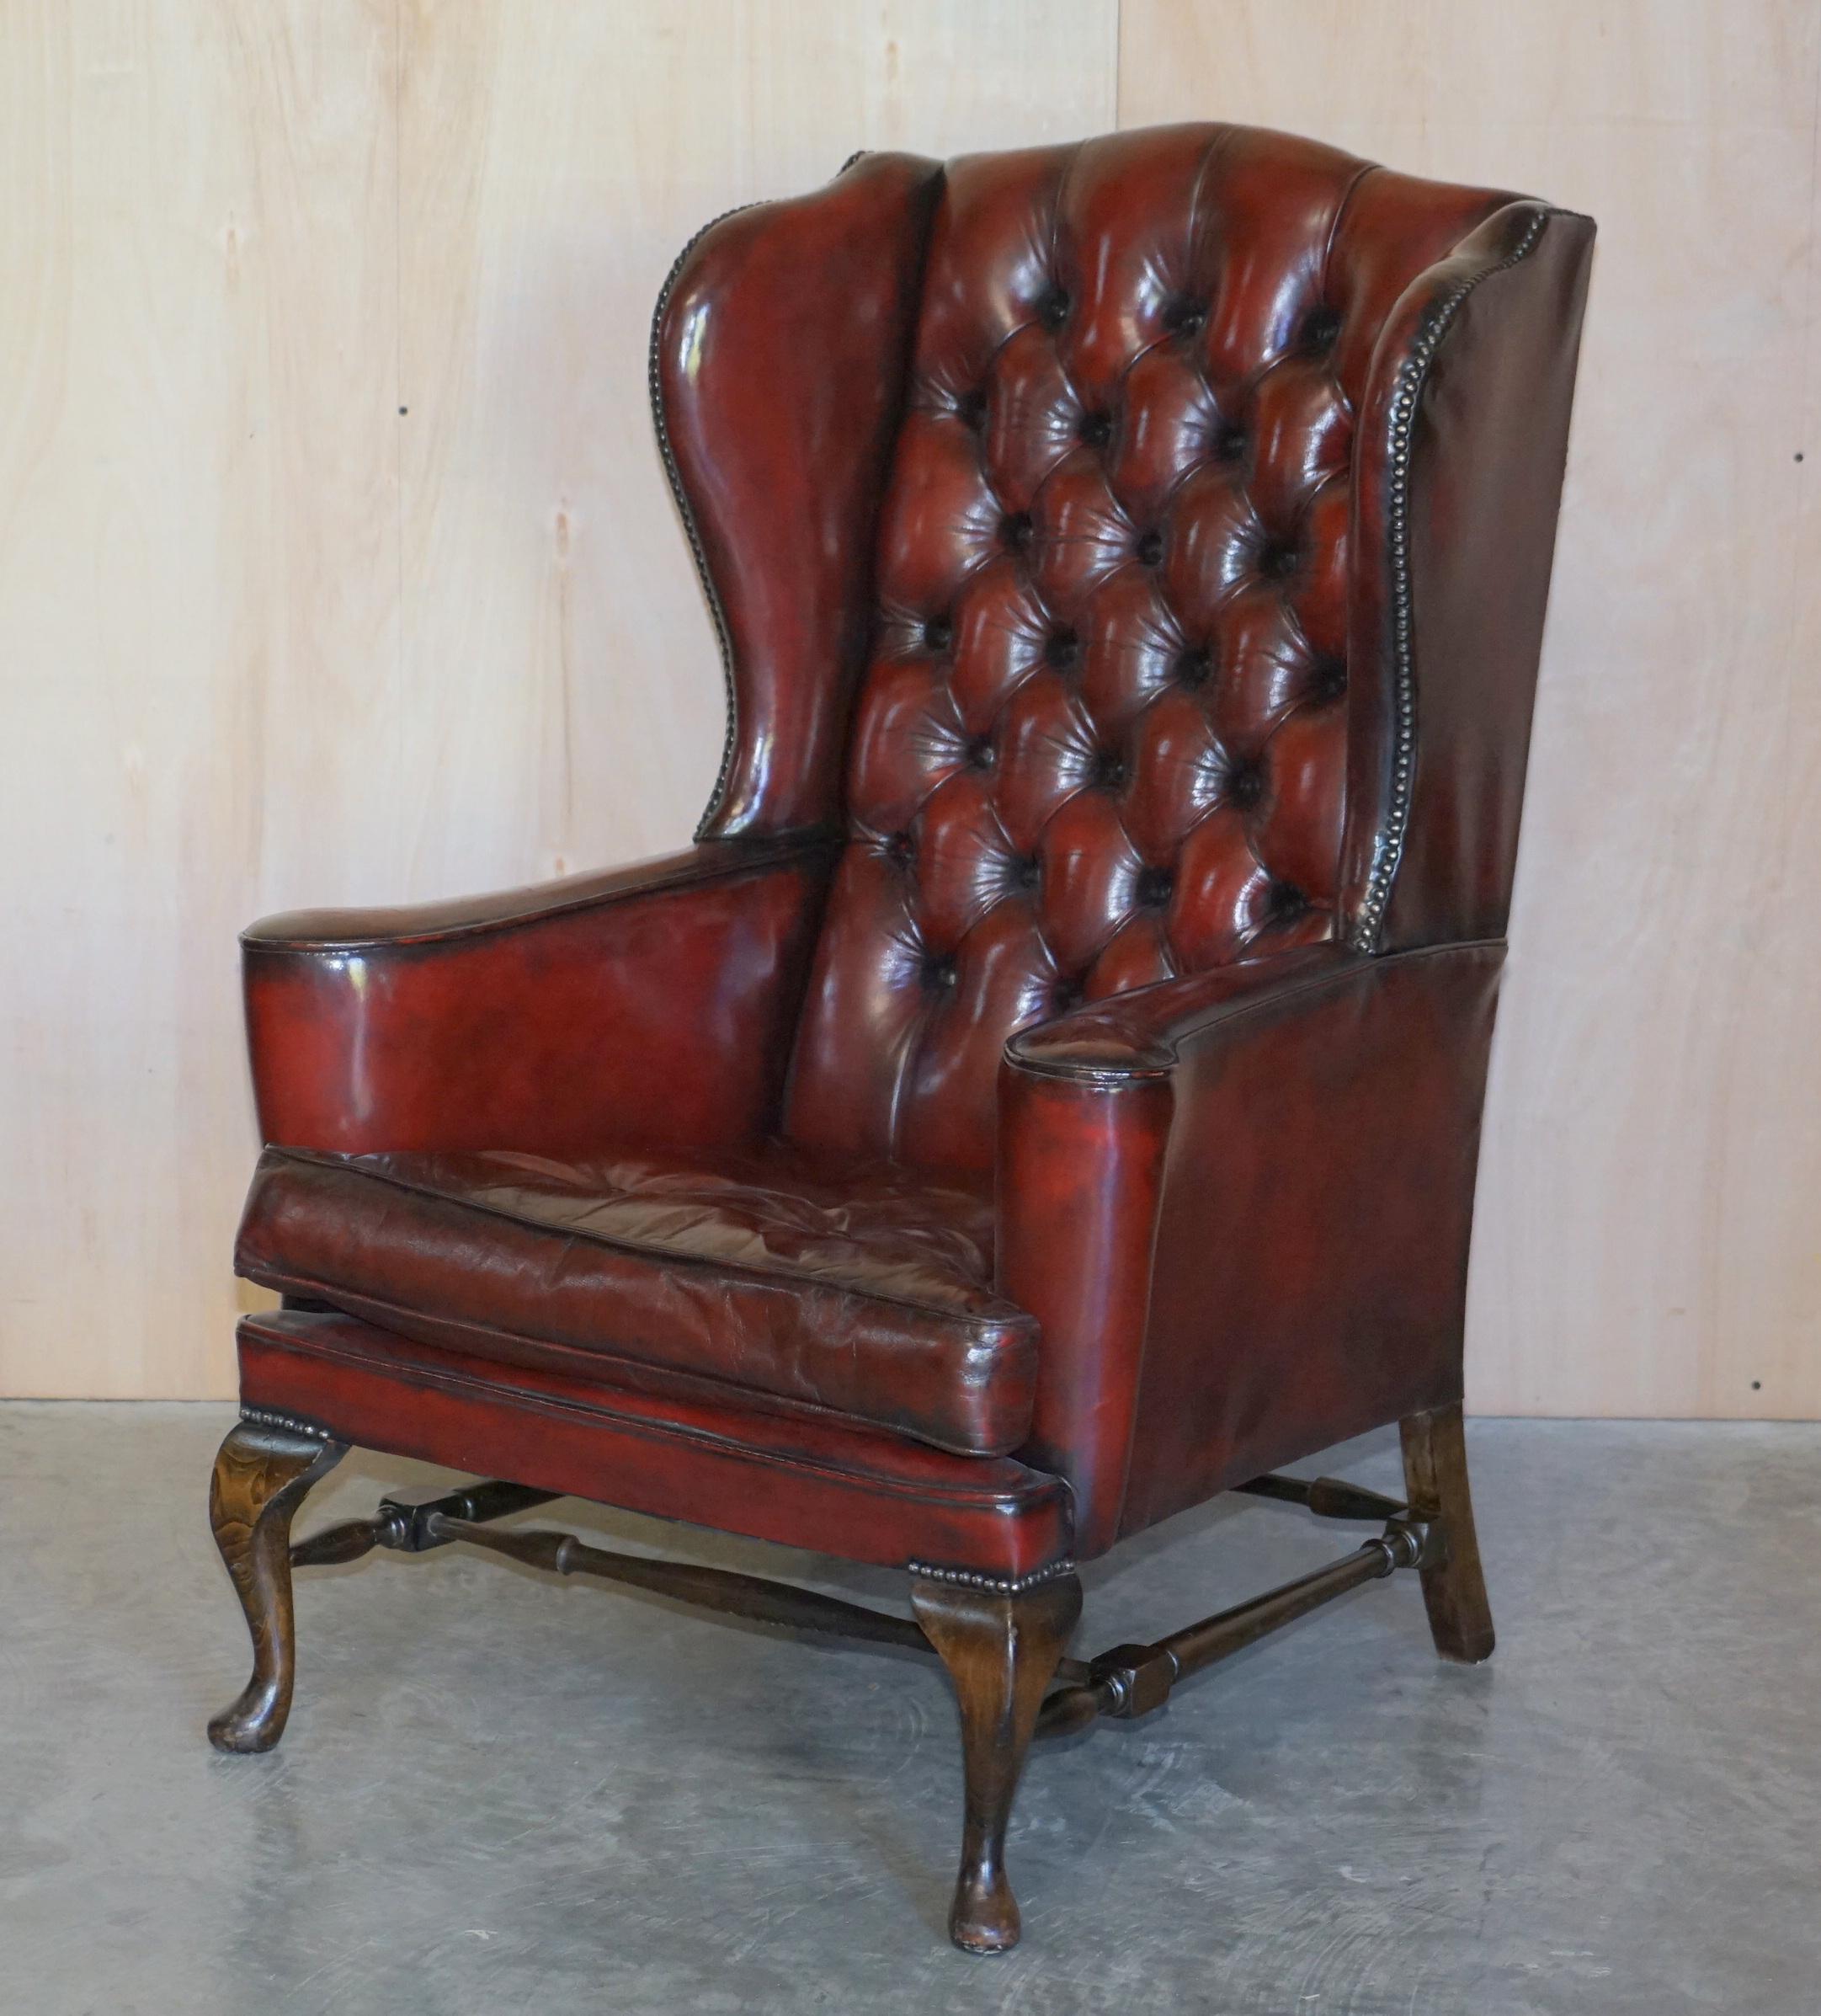 Nous sommes ravis de proposer à la vente cette paire de fauteuils vintage William Morris Chesterfield en cuir bordeaux entièrement restaurés avec des coussins flottants en plumes de style Thomas Chippendale 

Cette paire de fauteuils est un